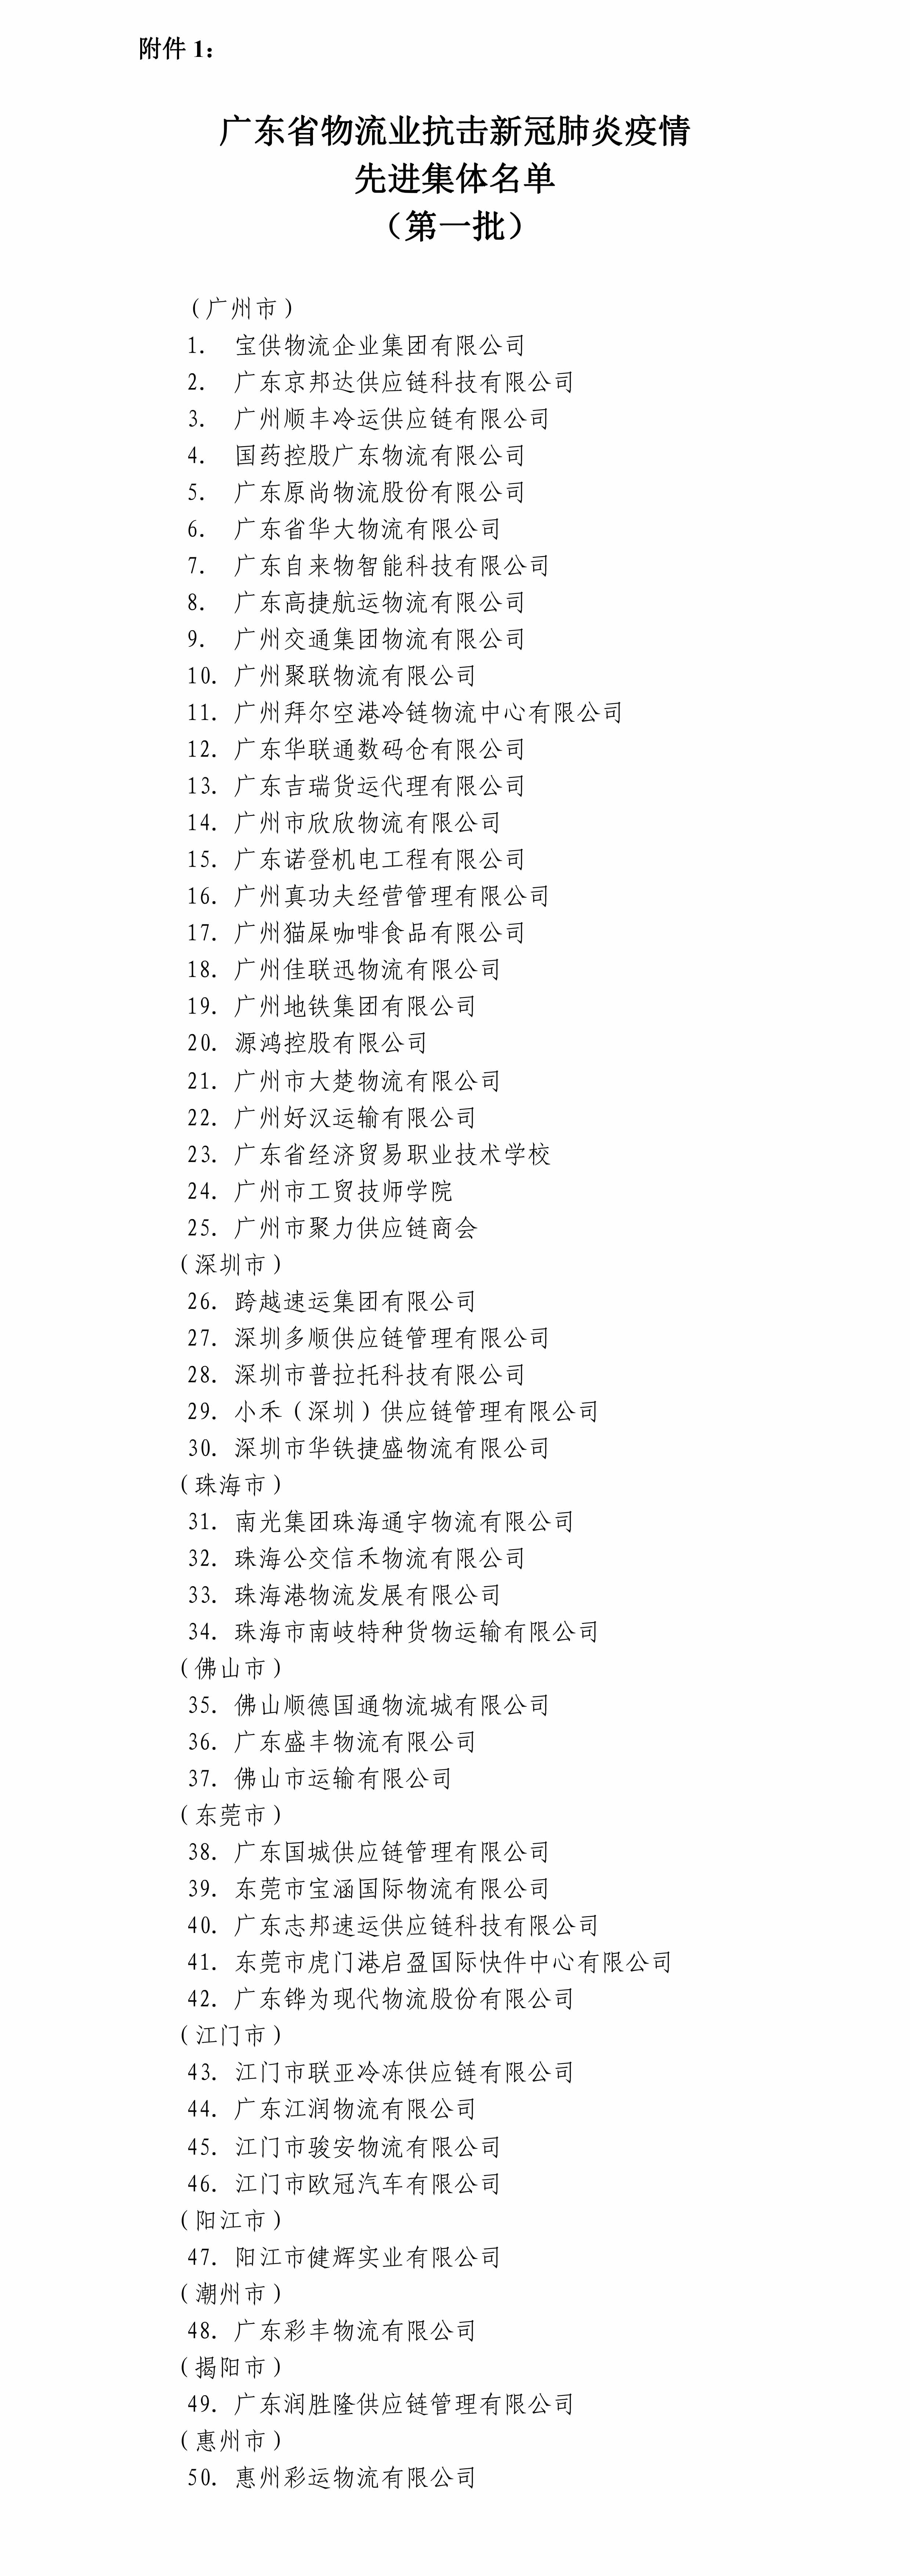 0_关于表彰广东省物流行业抗击新冠肺炎疫情先进集体和先进个人的决定（定稿）-2.jpg